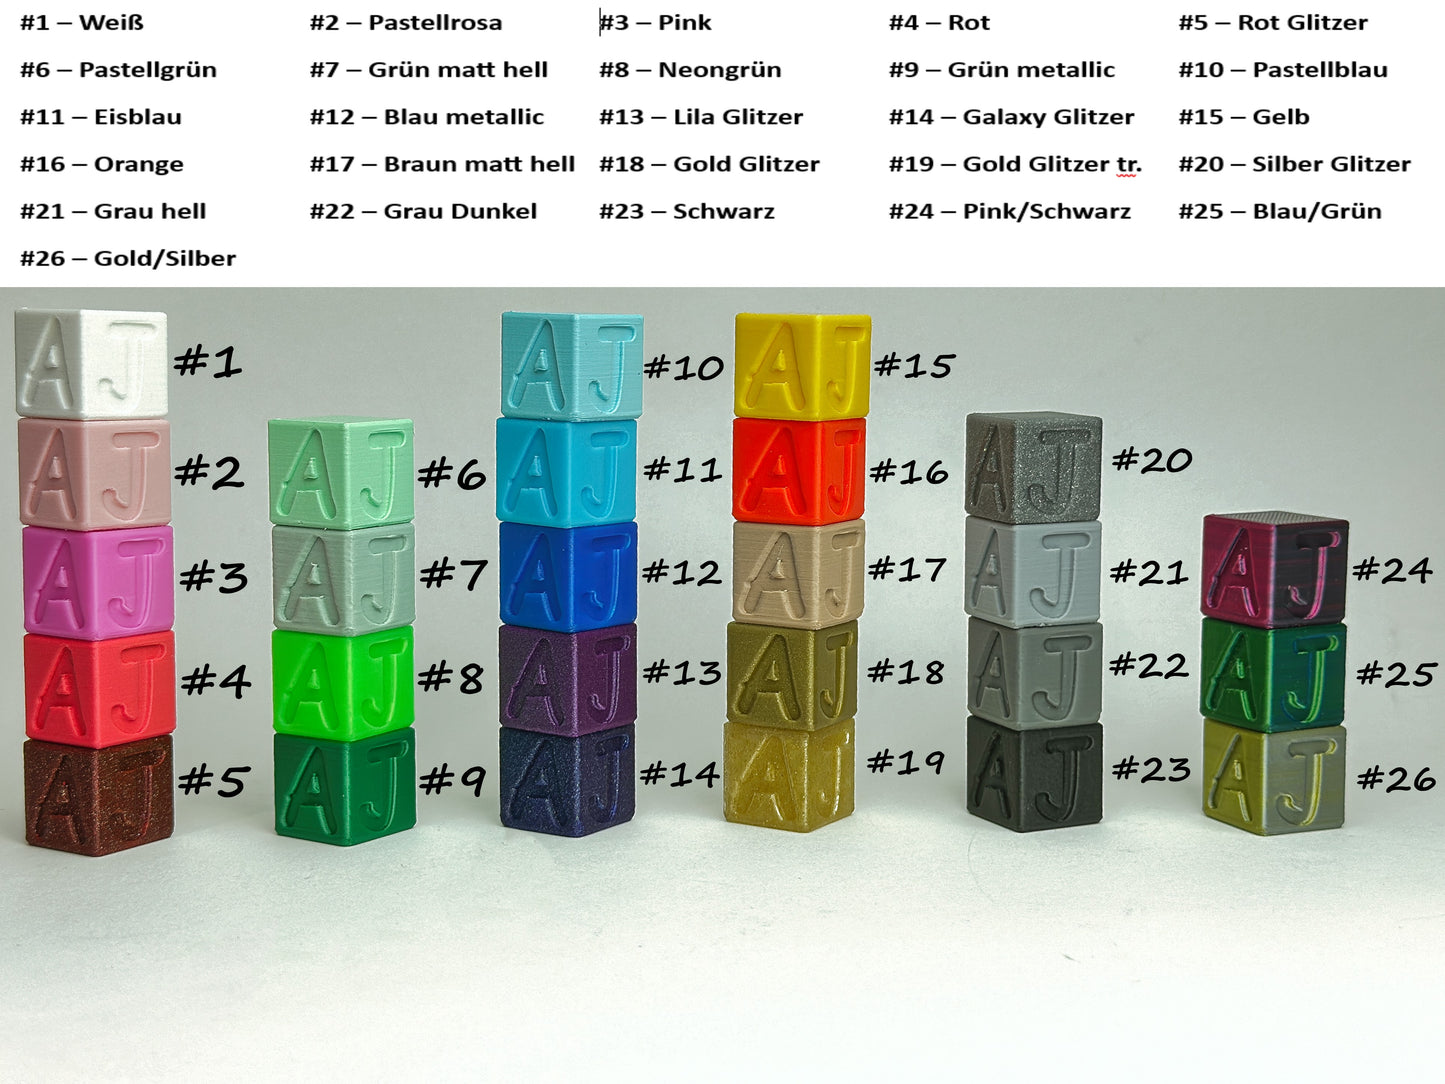 PREMIUM Tower: Stilvolle Diamond Painting Schiffchen-Organisation in Ihrer Farbwahl – Wählen Sie Ihre perfekte Option!